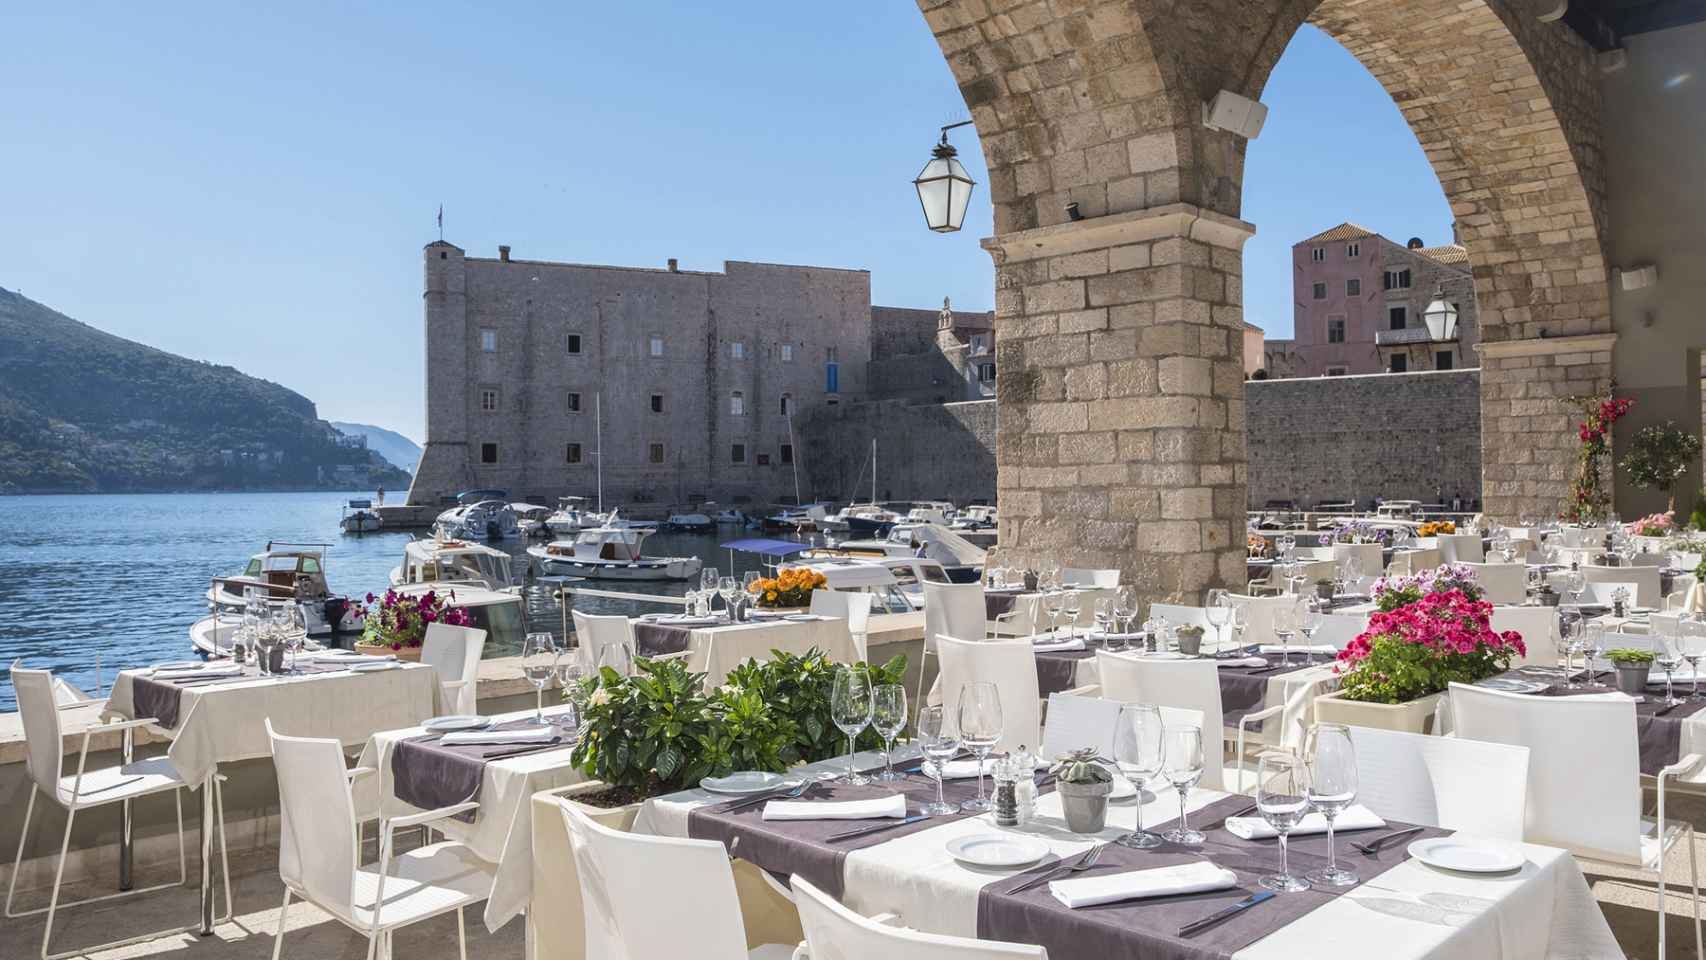 La terraza del restaurante Arsenal ofrece unas vistas espectaculares al puerto de Dubrovnik